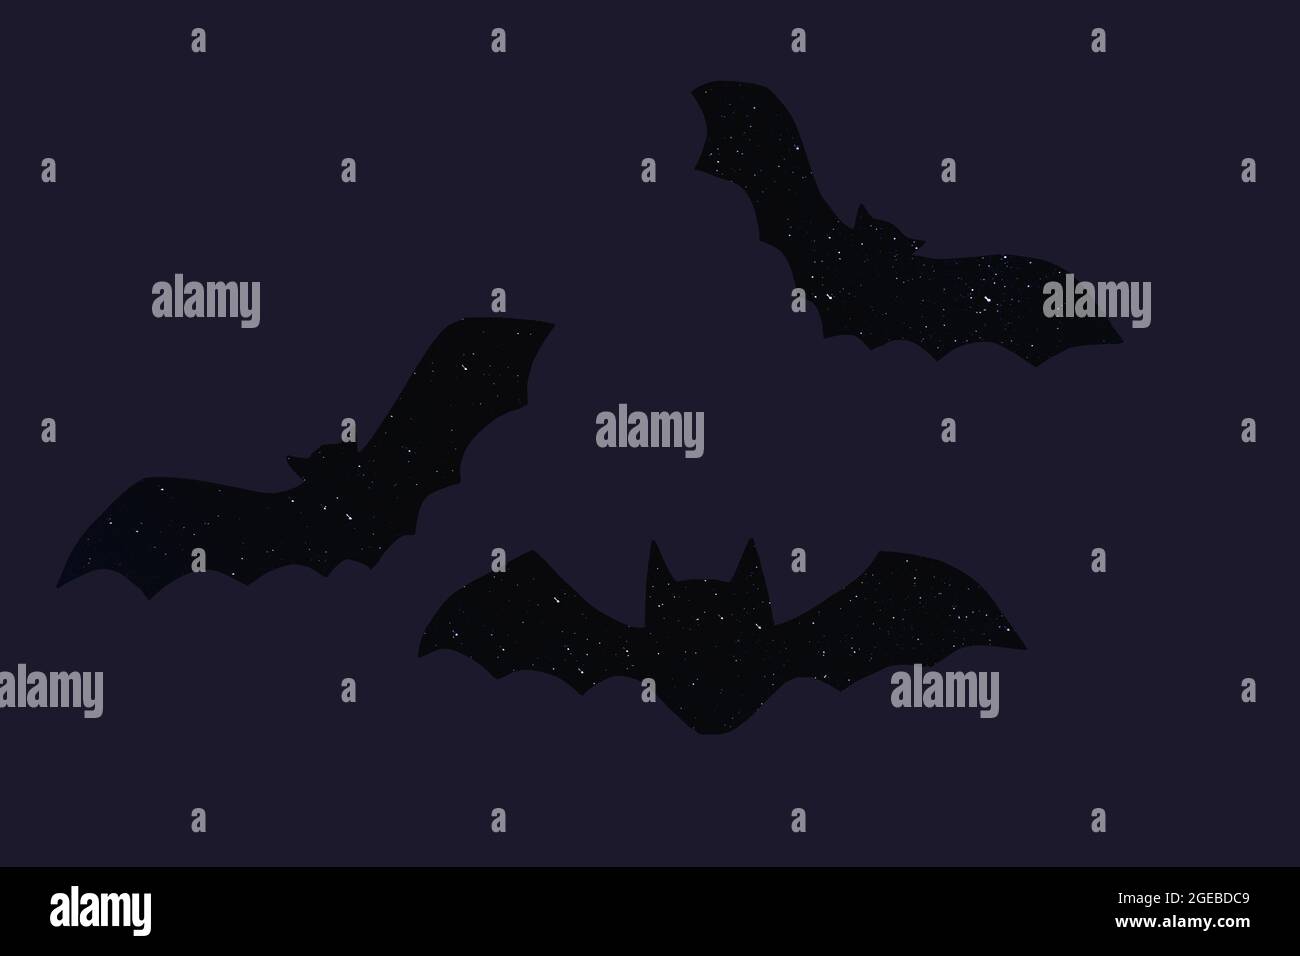 Carte postale de la silhouette de la chauve-souris vampire d'Halloween avec des étoiles sur fond violet Banque D'Images